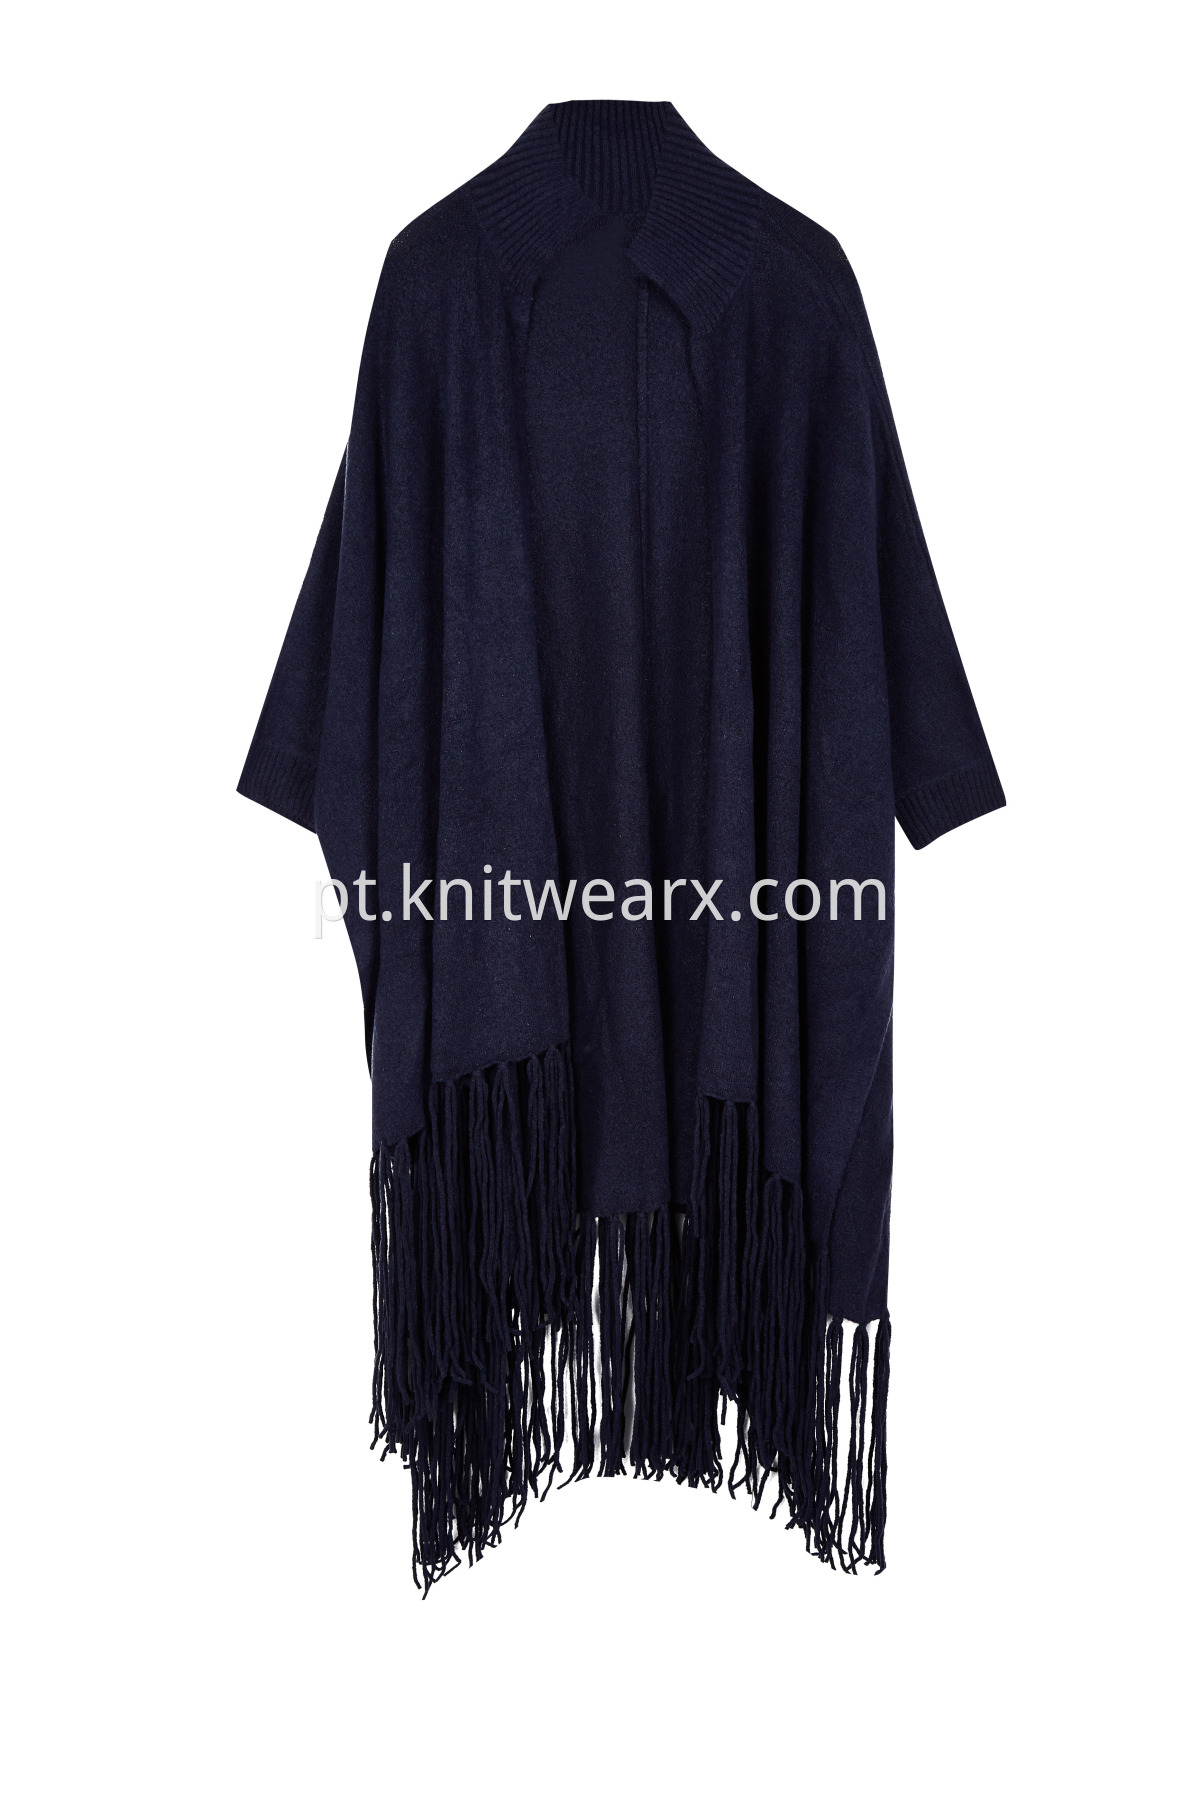 Women's Shawl Knit Wrap Fringe Poncho Lapel Coat Cardigan